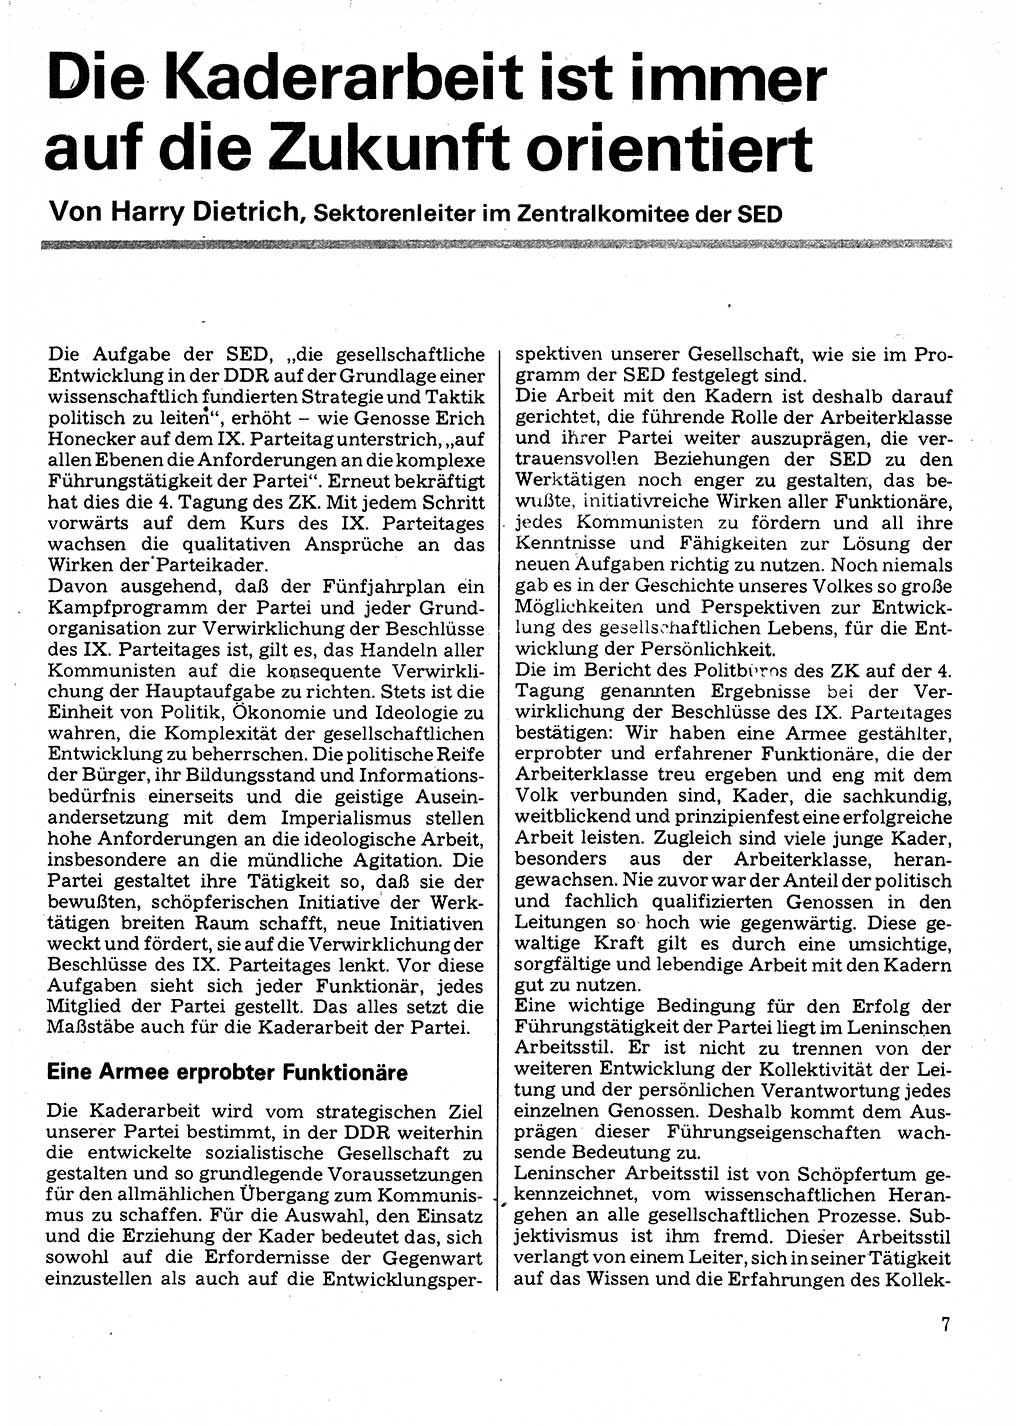 Neuer Weg (NW), Organ des Zentralkomitees (ZK) der SED (Sozialistische Einheitspartei Deutschlands) für Fragen des Parteilebens, 32. Jahrgang [Deutsche Demokratische Republik (DDR)] 1977, Seite 7 (NW ZK SED DDR 1977, S. 7)